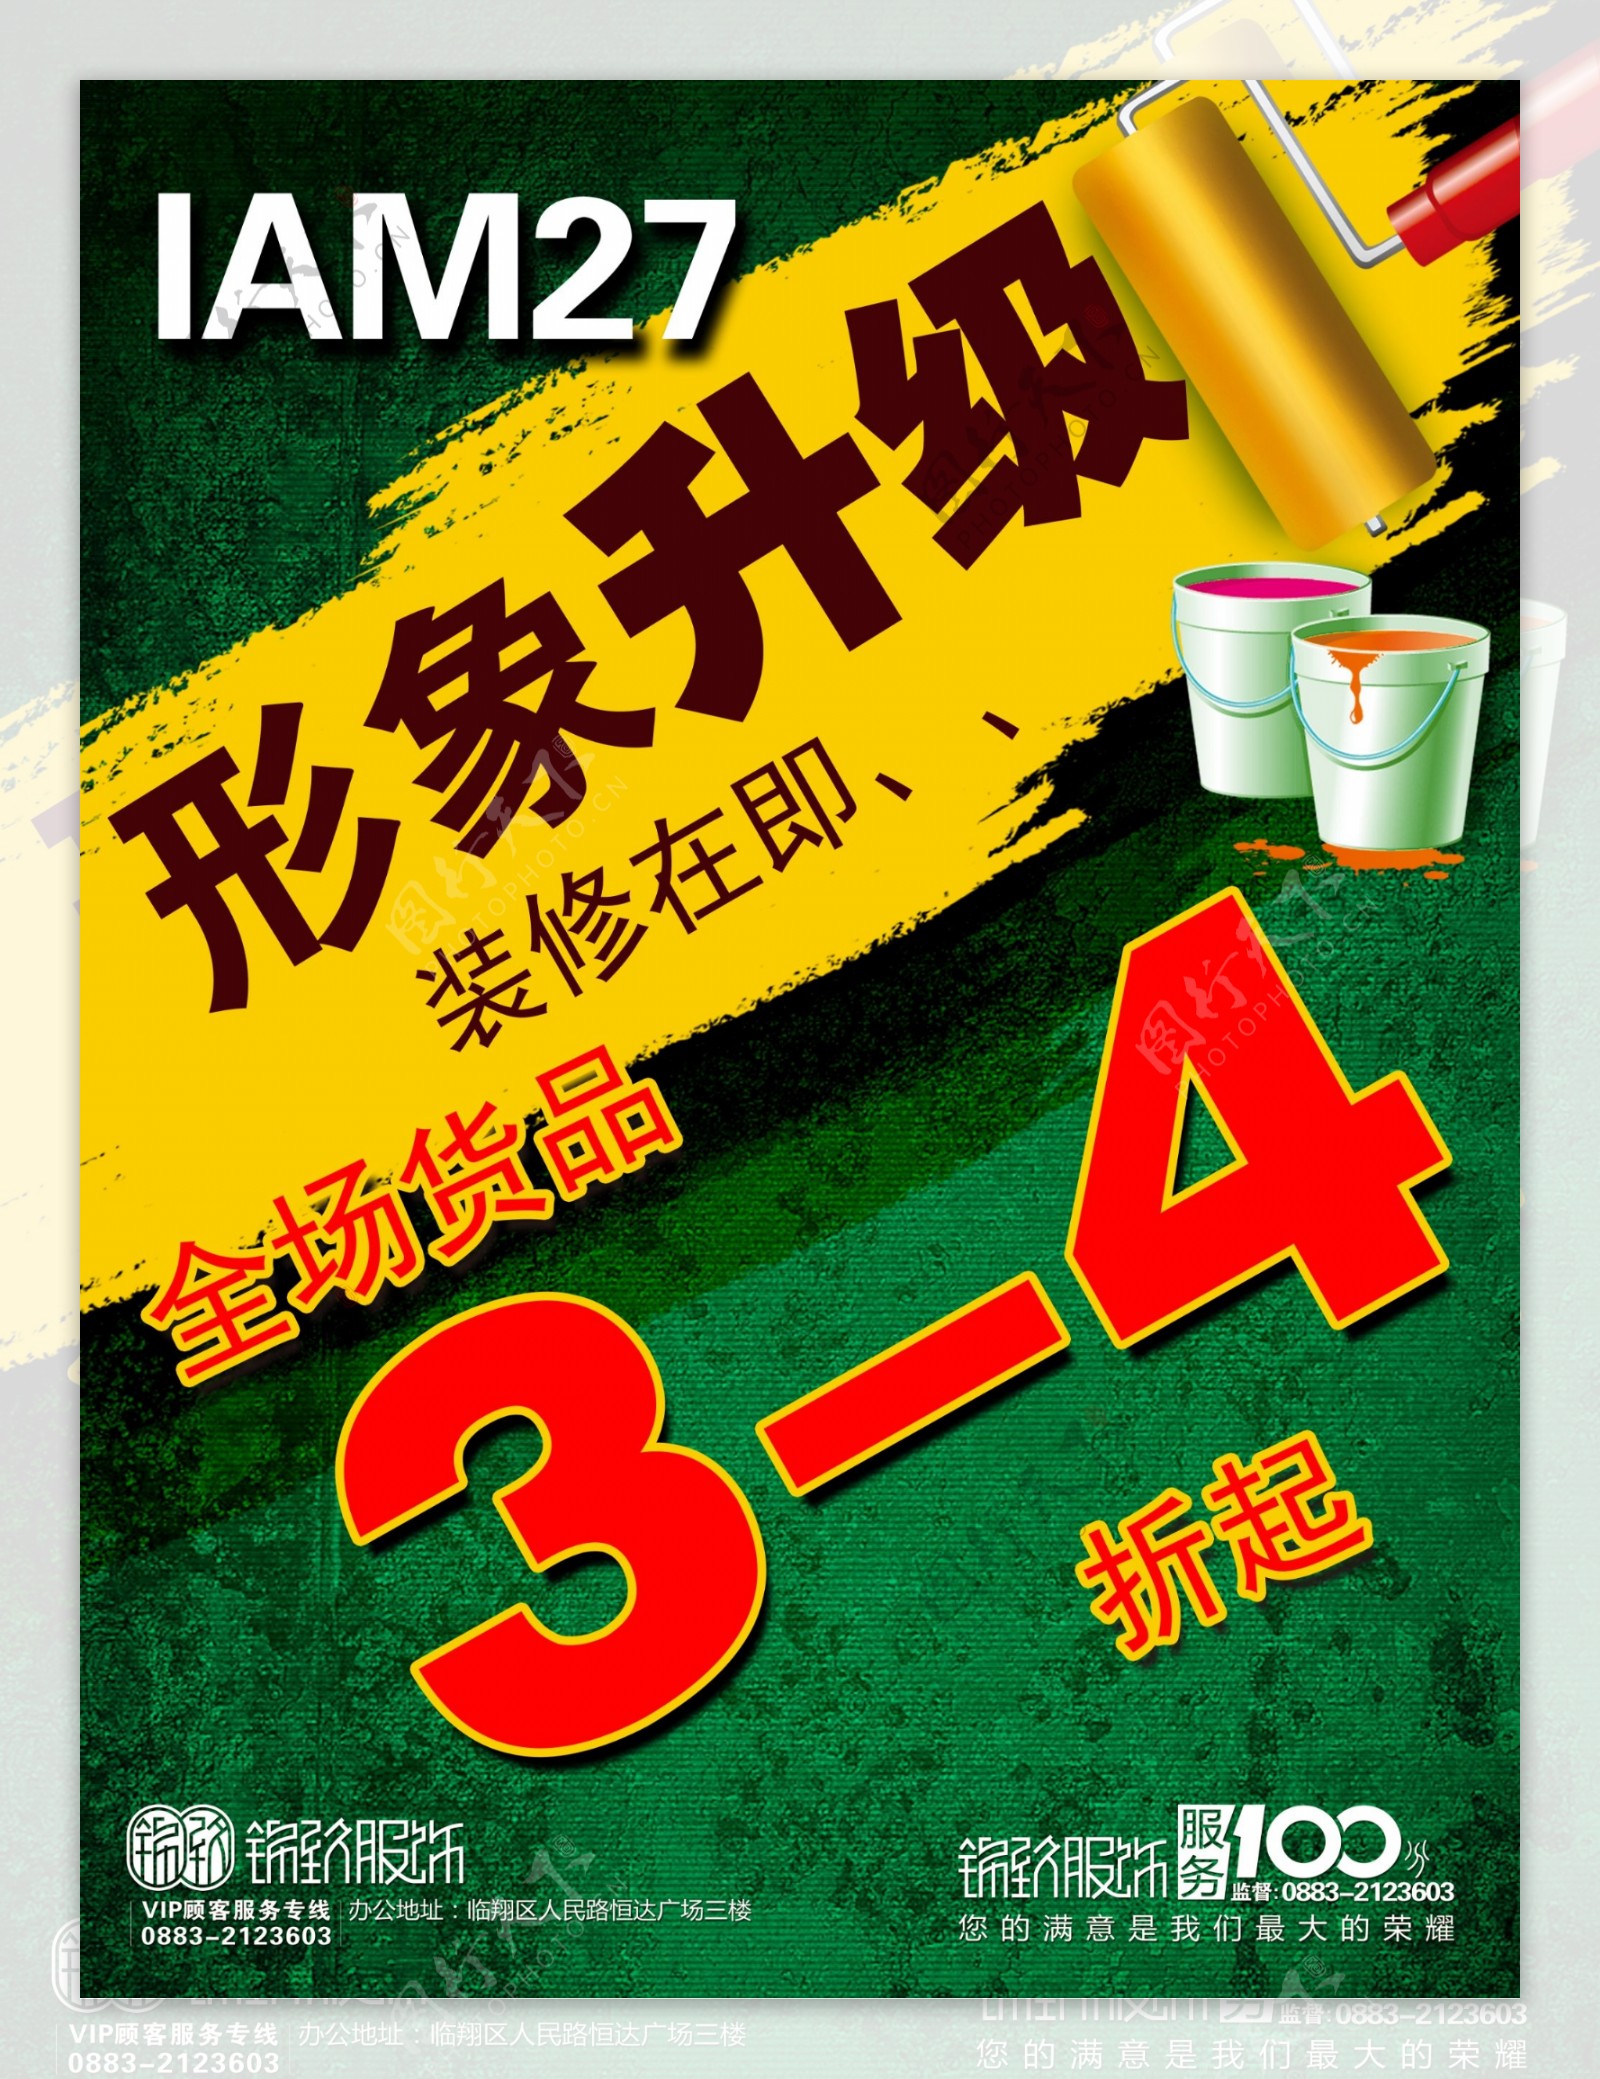 IAM27店面升级海报图片